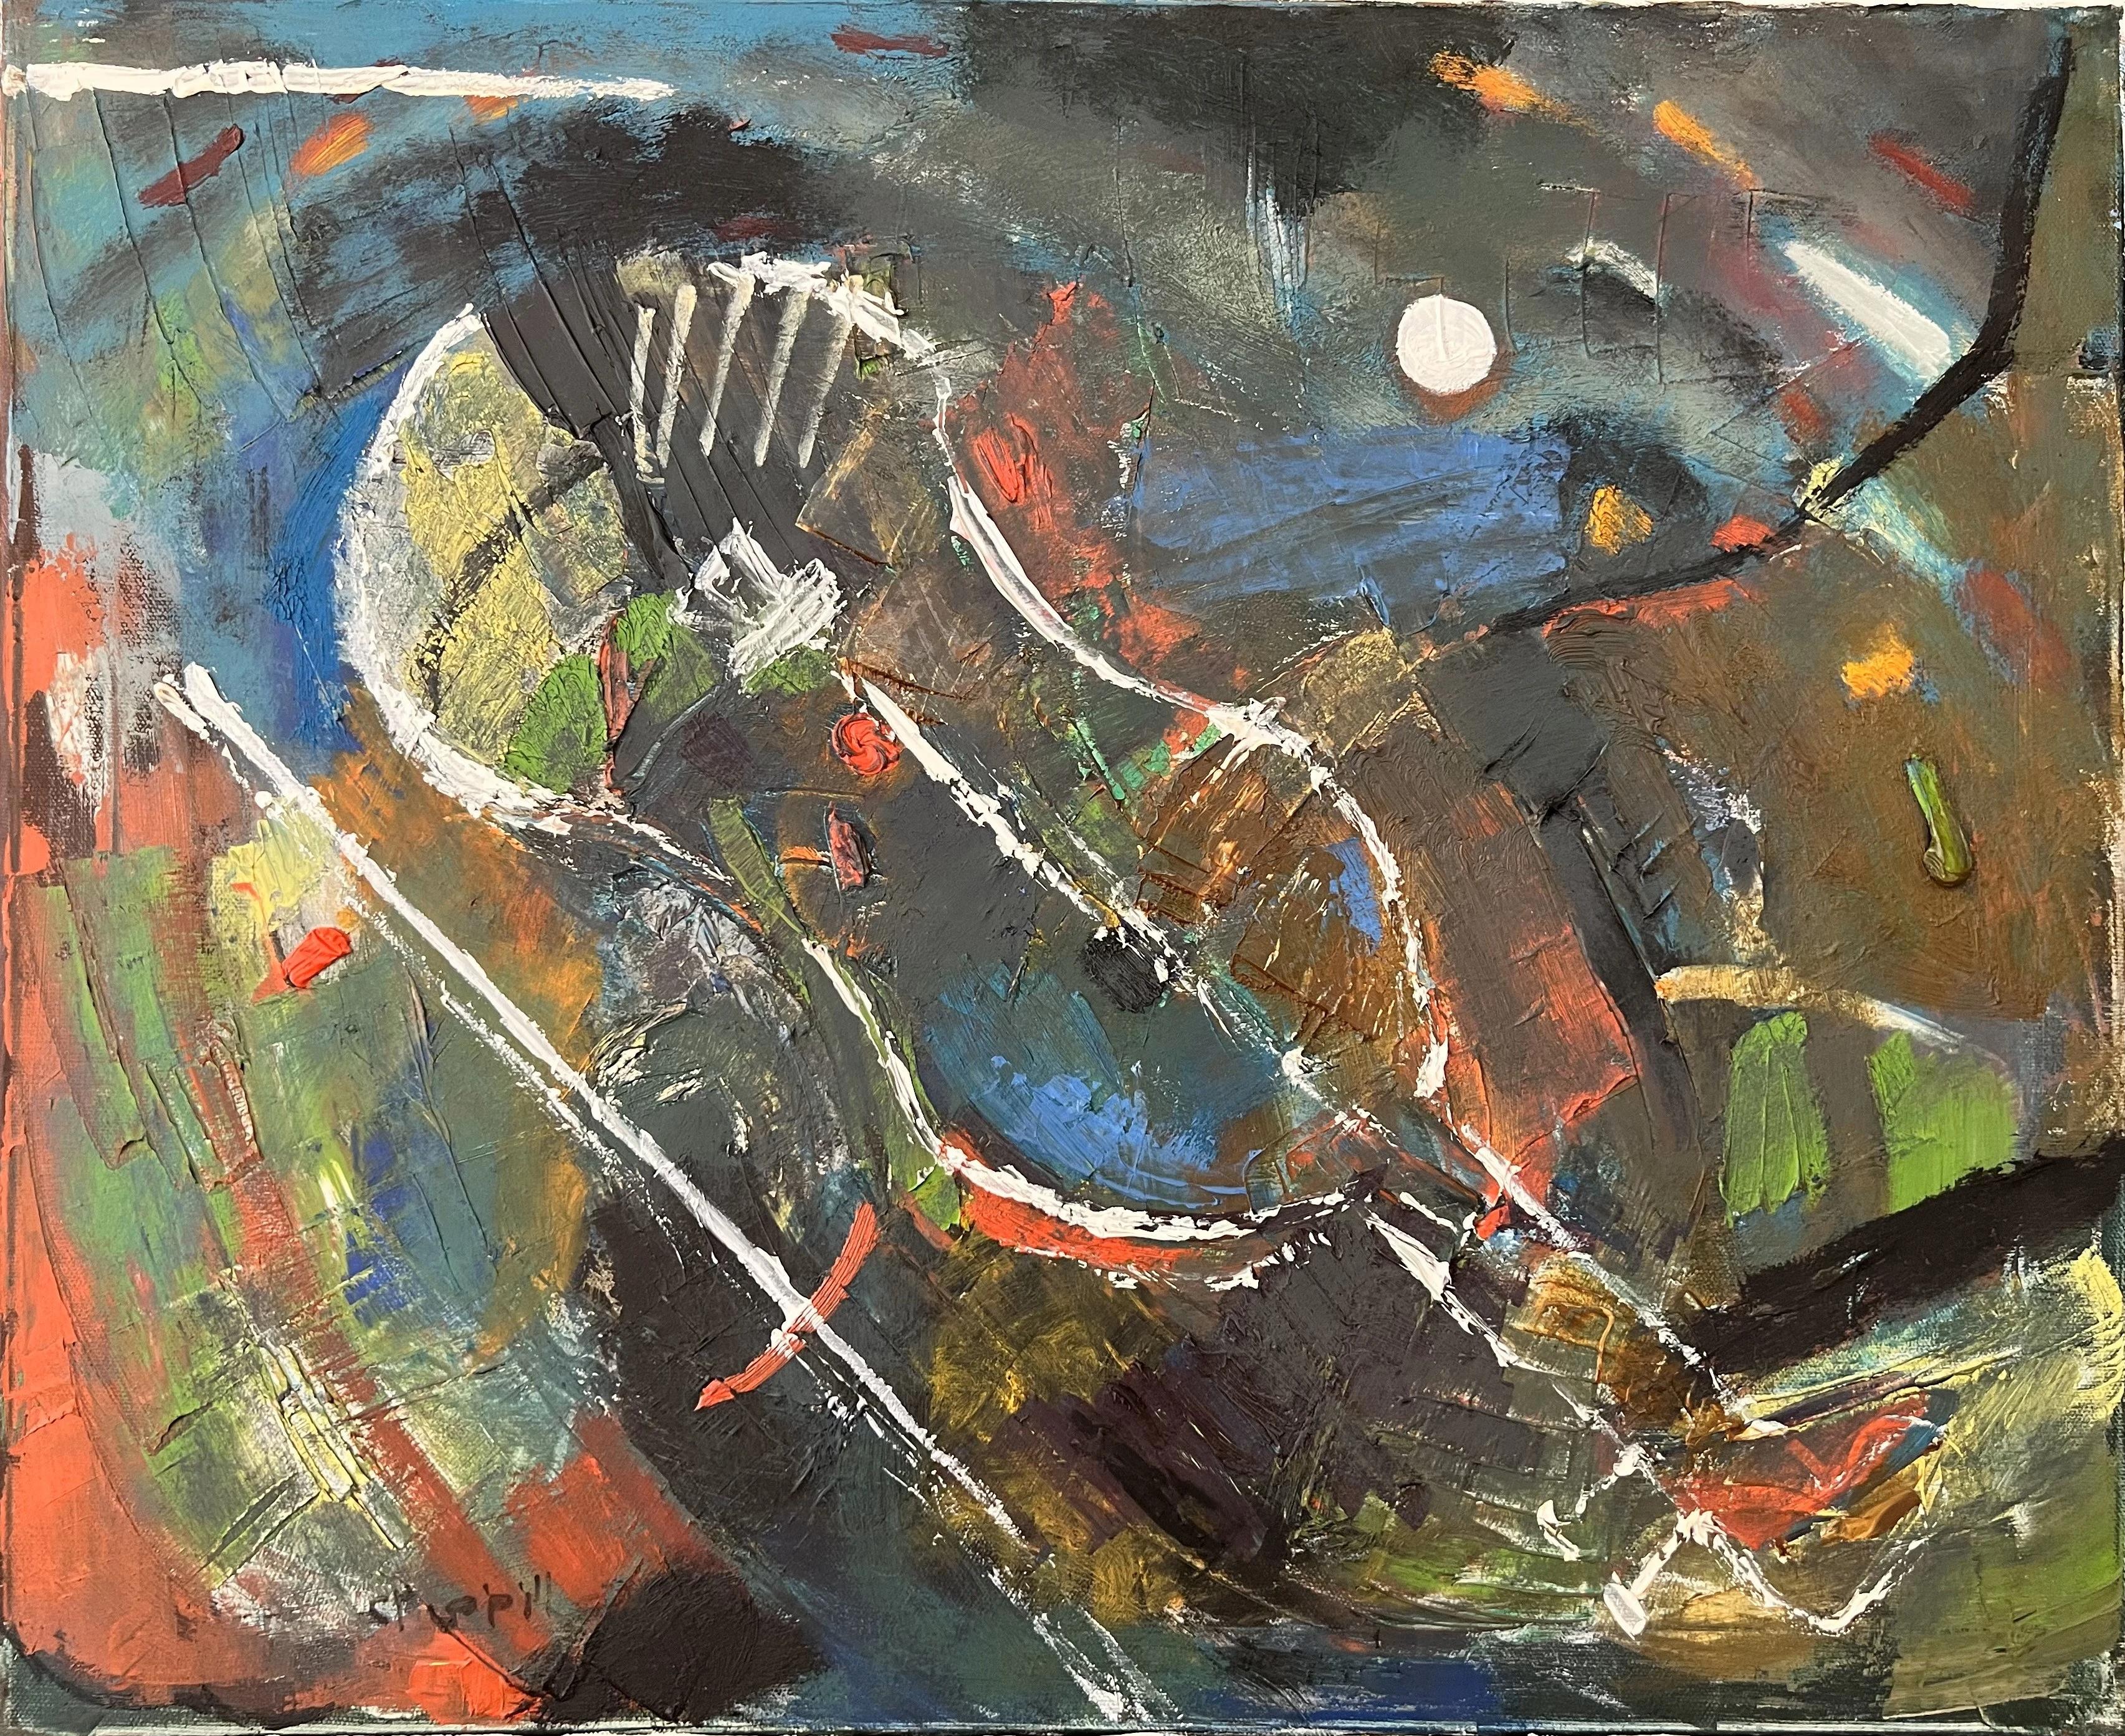 "Violine" Abstrakte Ölgemälde 20" x 24" Zoll von Ashraf Zamzami


ÜBER
Die charakteristische kühne und optimistische Farbgebung täuscht nicht über die unausweichlich nachdenkliche Natur und die zuweilen unbegreifliche Distanz hinweg, die Zamzamis